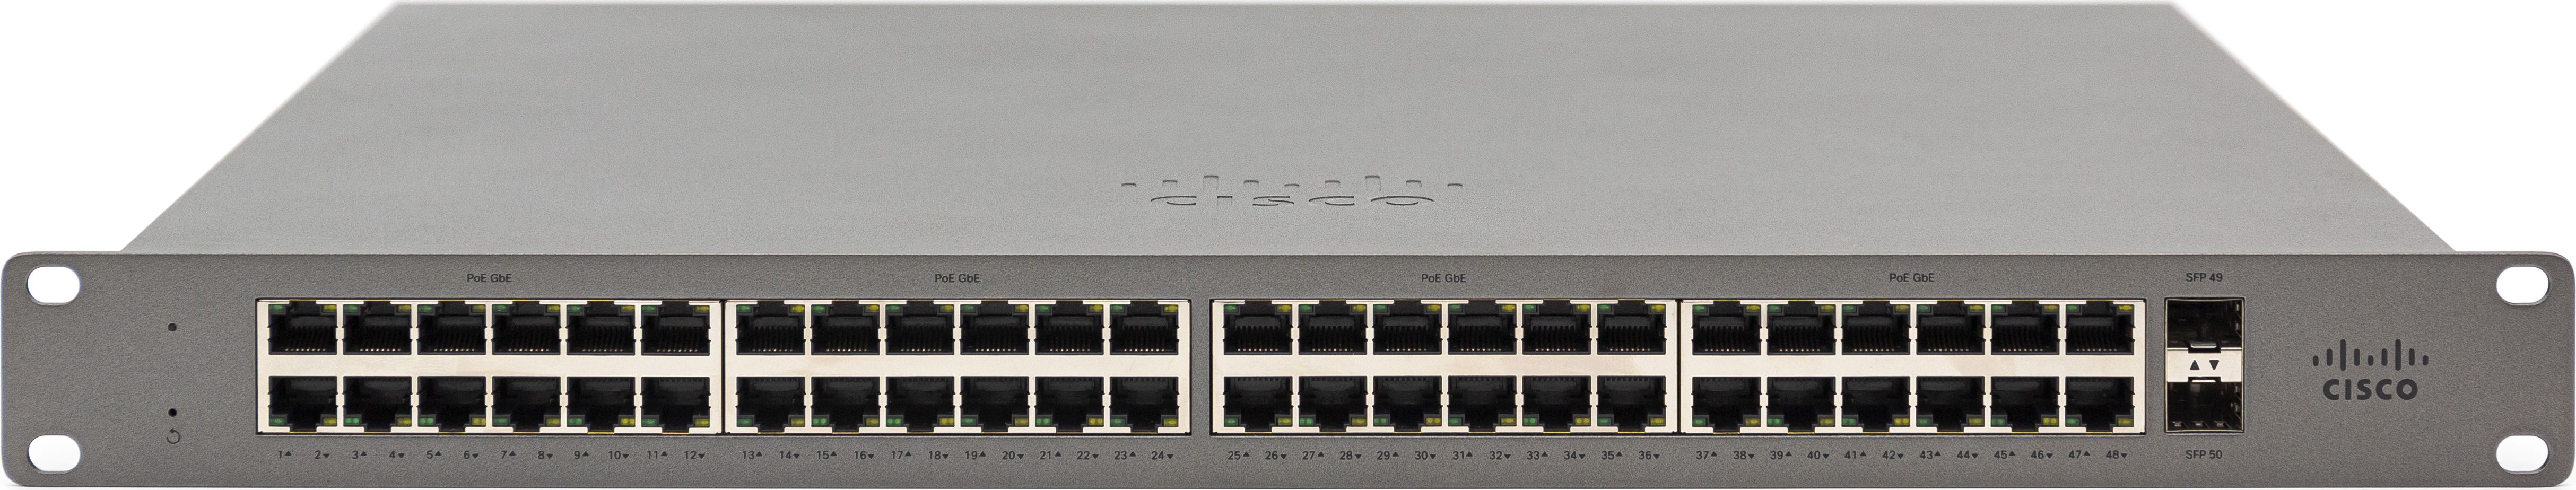 Switch Cisco GS110-48-HW-EU